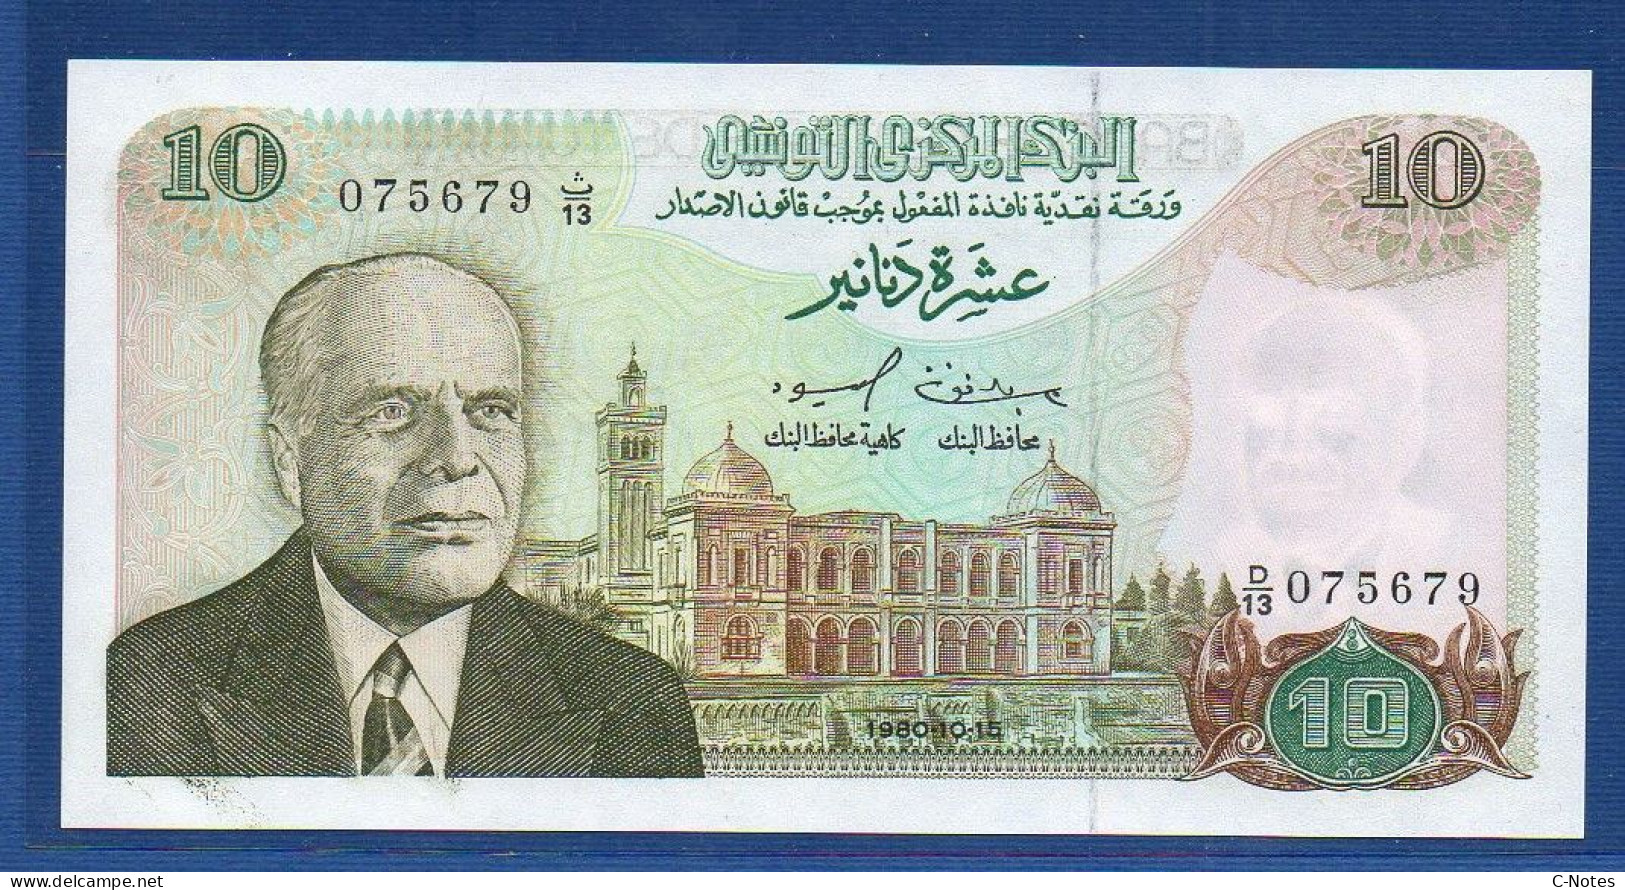 TUNISIA - P.76 – 10 Dinars 1980 UNC, S/n D/13 075679 - Tunisie